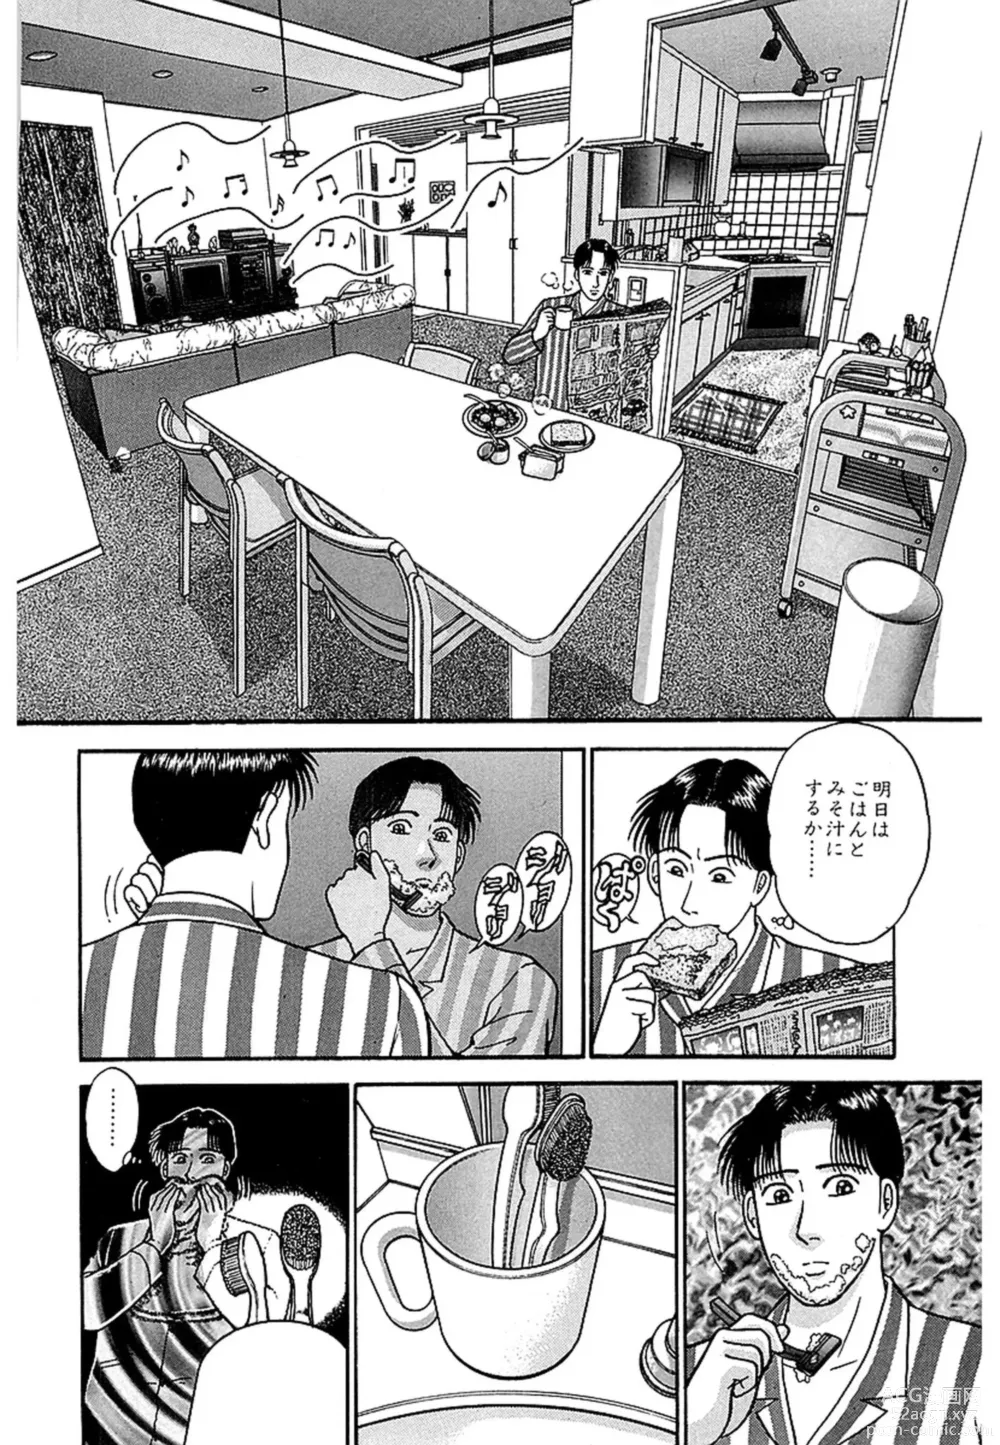 Page 7 of manga Women － Wimen － Shinsōban 1